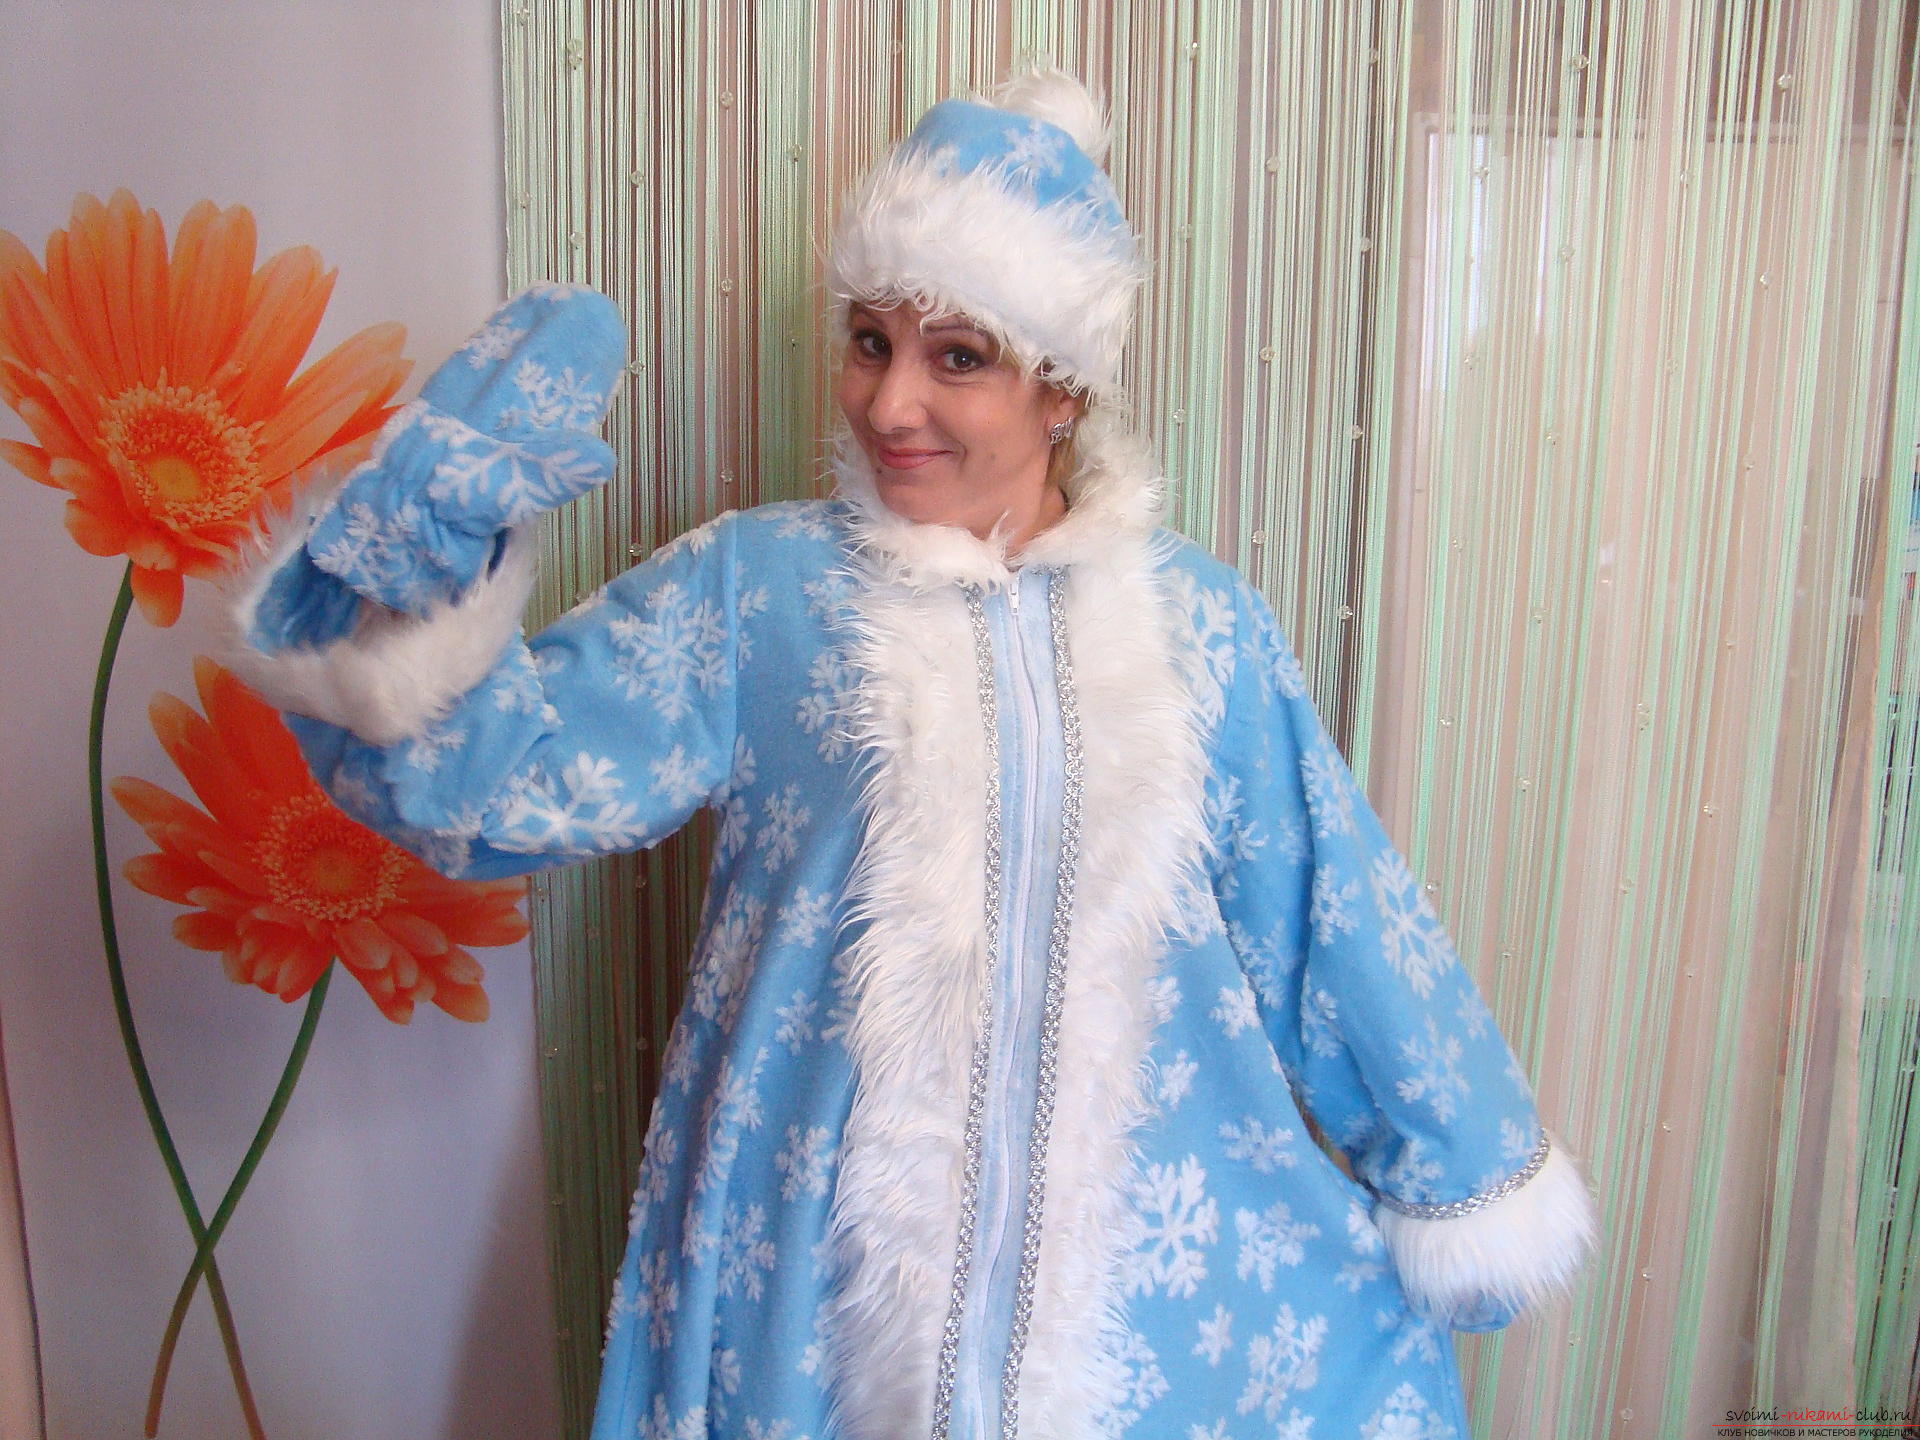 Як зробити костюм Снігуроньки як карнавального костюма для Нового року. Докладний майстер-клас з фото та відео допоможе зшити костюм Снігурки навіть початківцям майстриням .. Фото №1